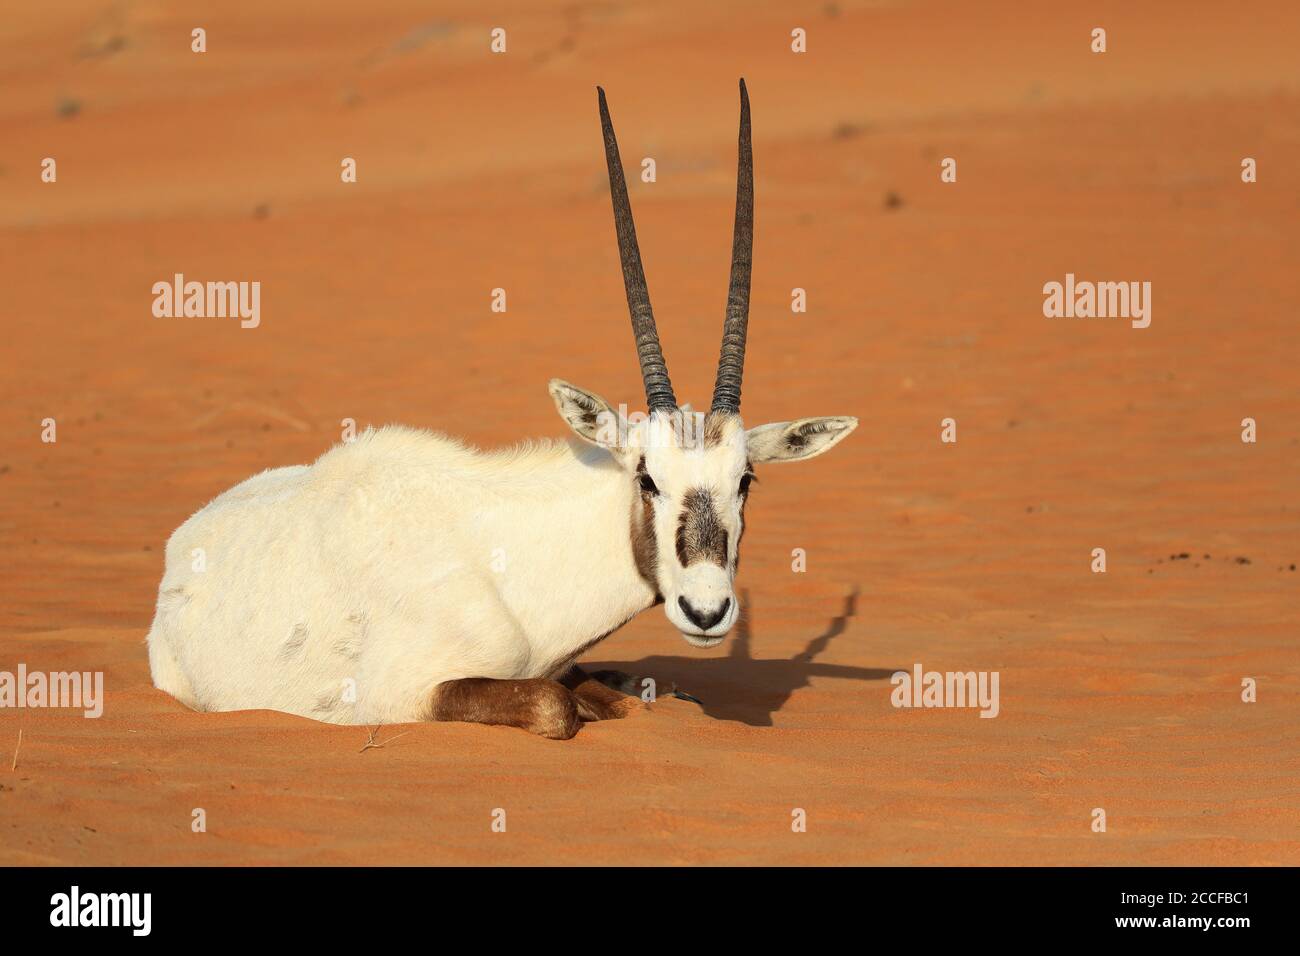 El antílope árabe oryx se encuentra en la arena Foto de stock